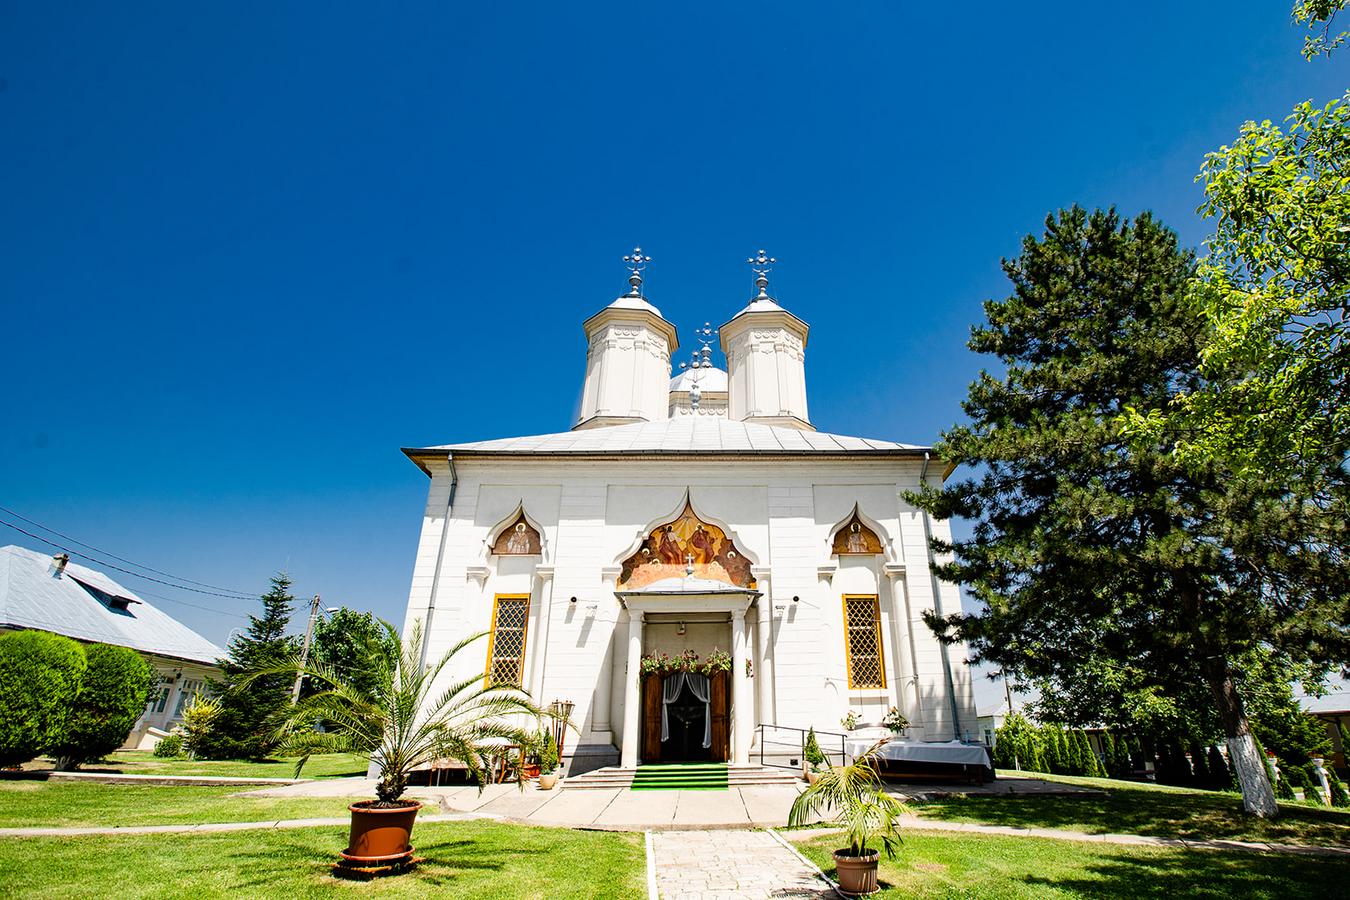 Obiective turistice în Ilfov. Mănăstirea Pasărea 